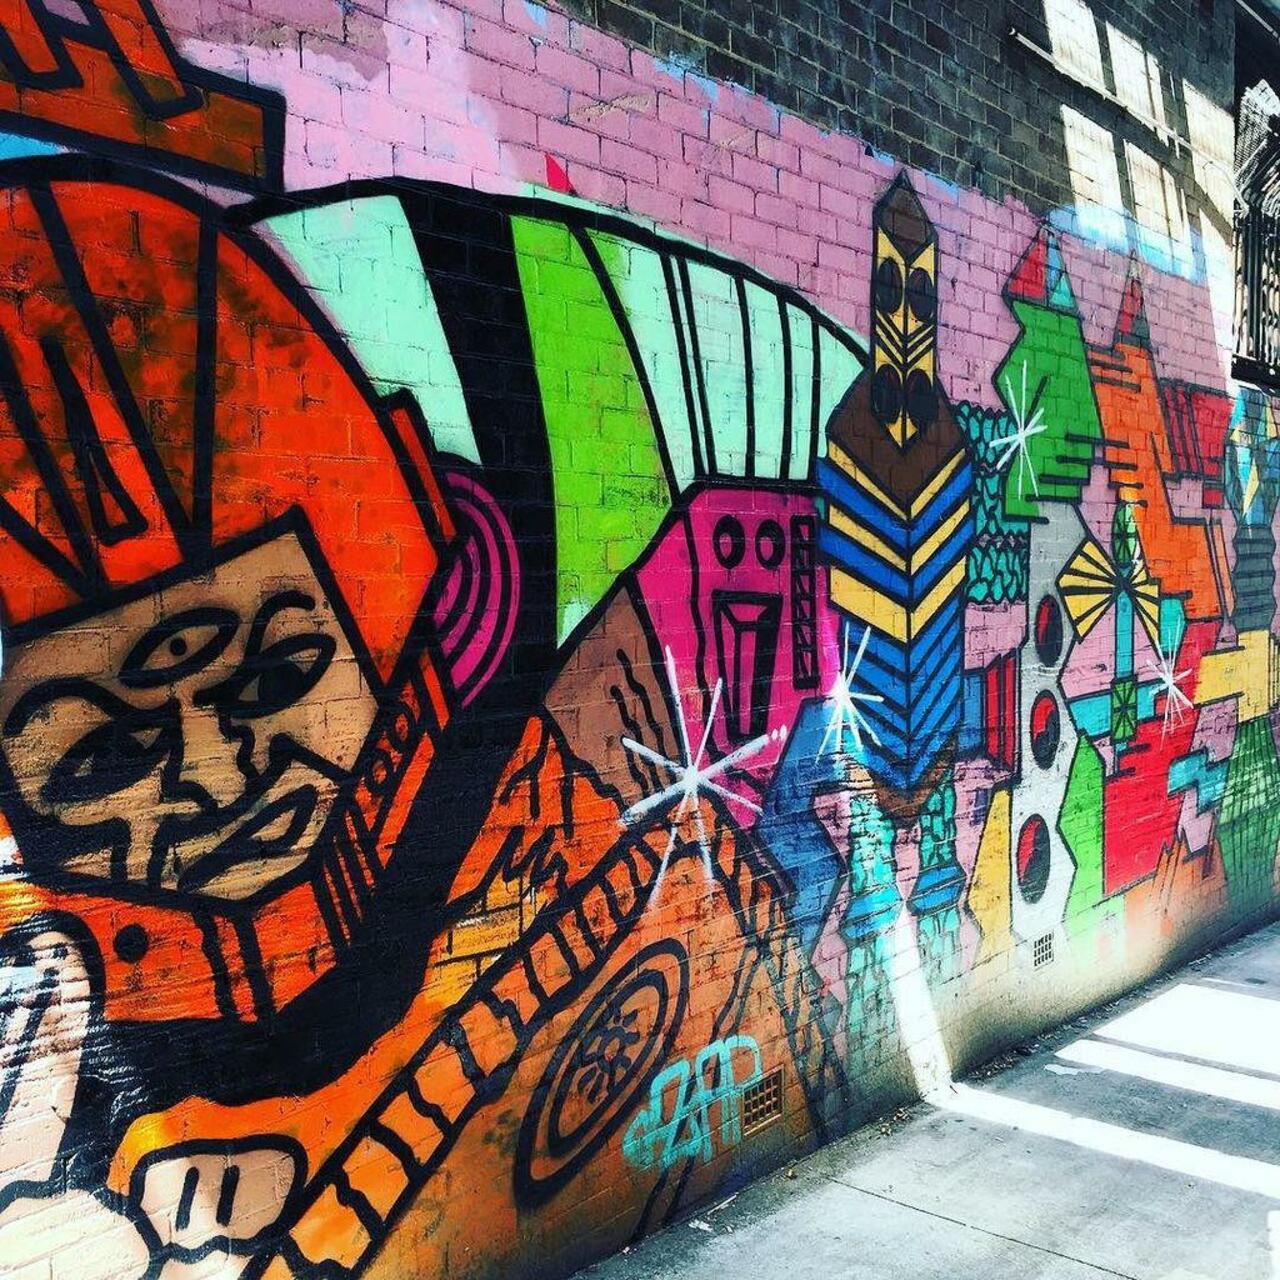 #streetart #graffiti #art #darlo #darlinghurst #sydney #publicart #artofinsta http://ift.tt/1Ozxgcu http://t.co/BZNKpV3FJt